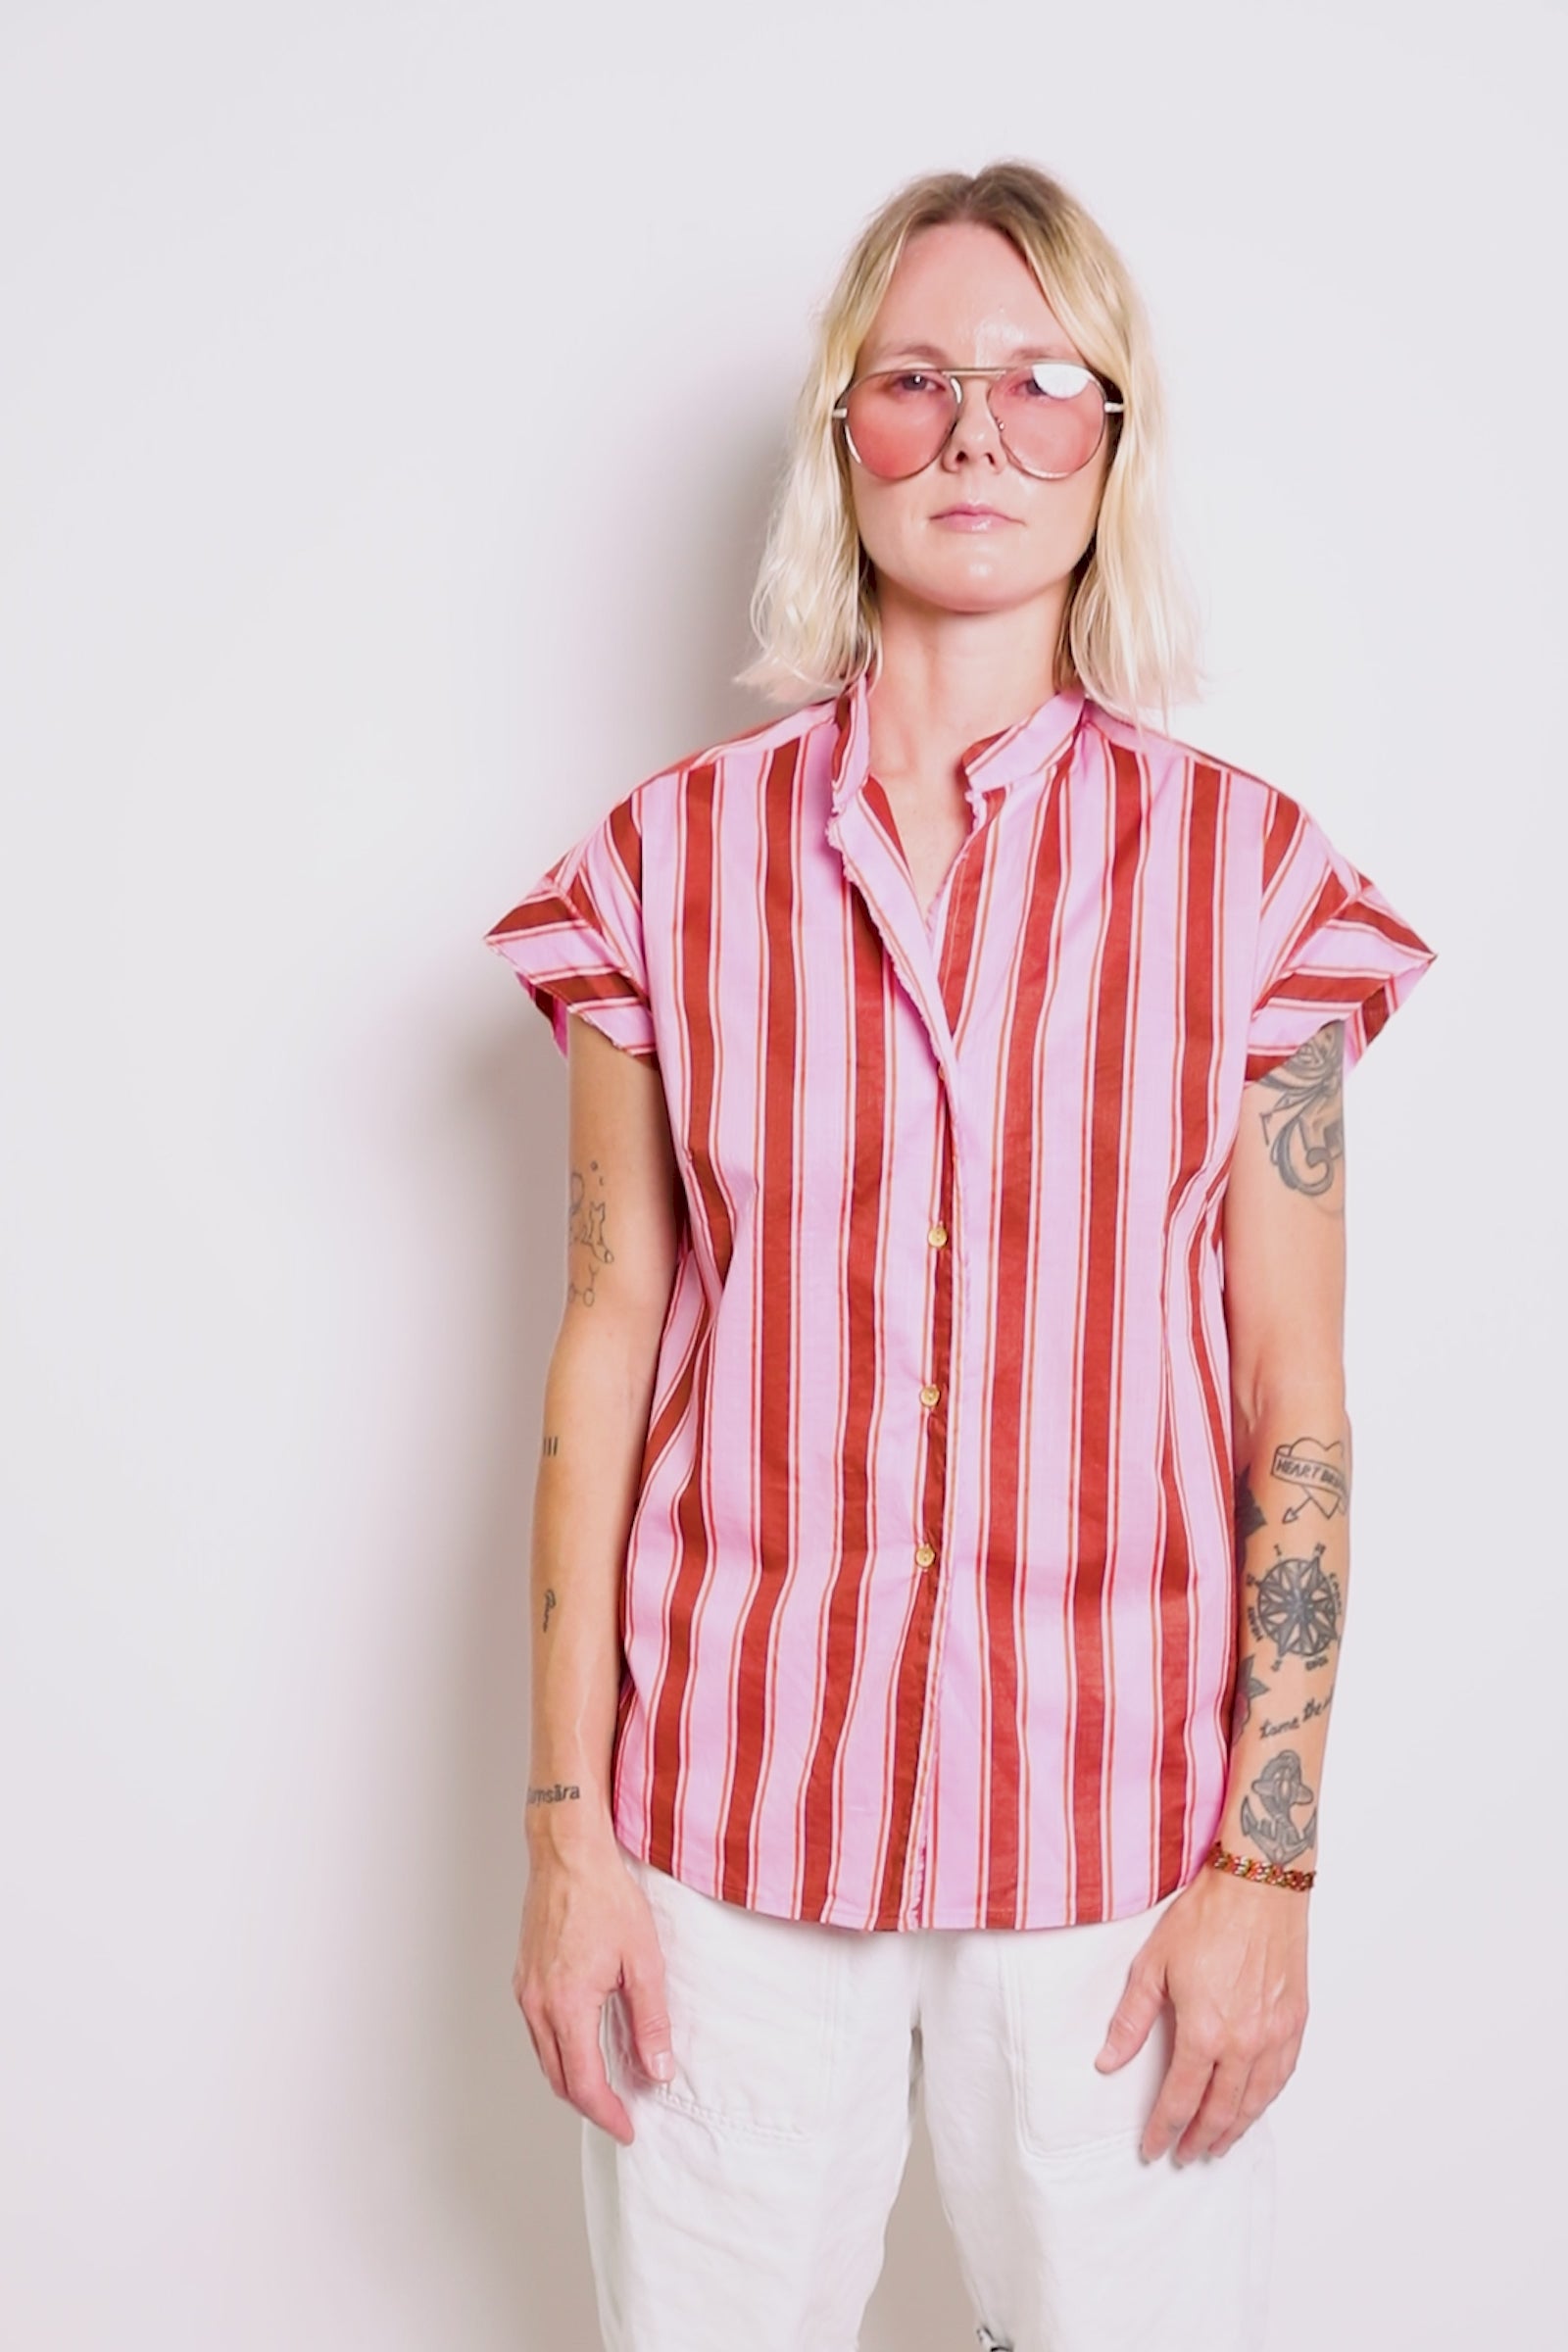 byfreer darlink pink stripe cotton shirt.